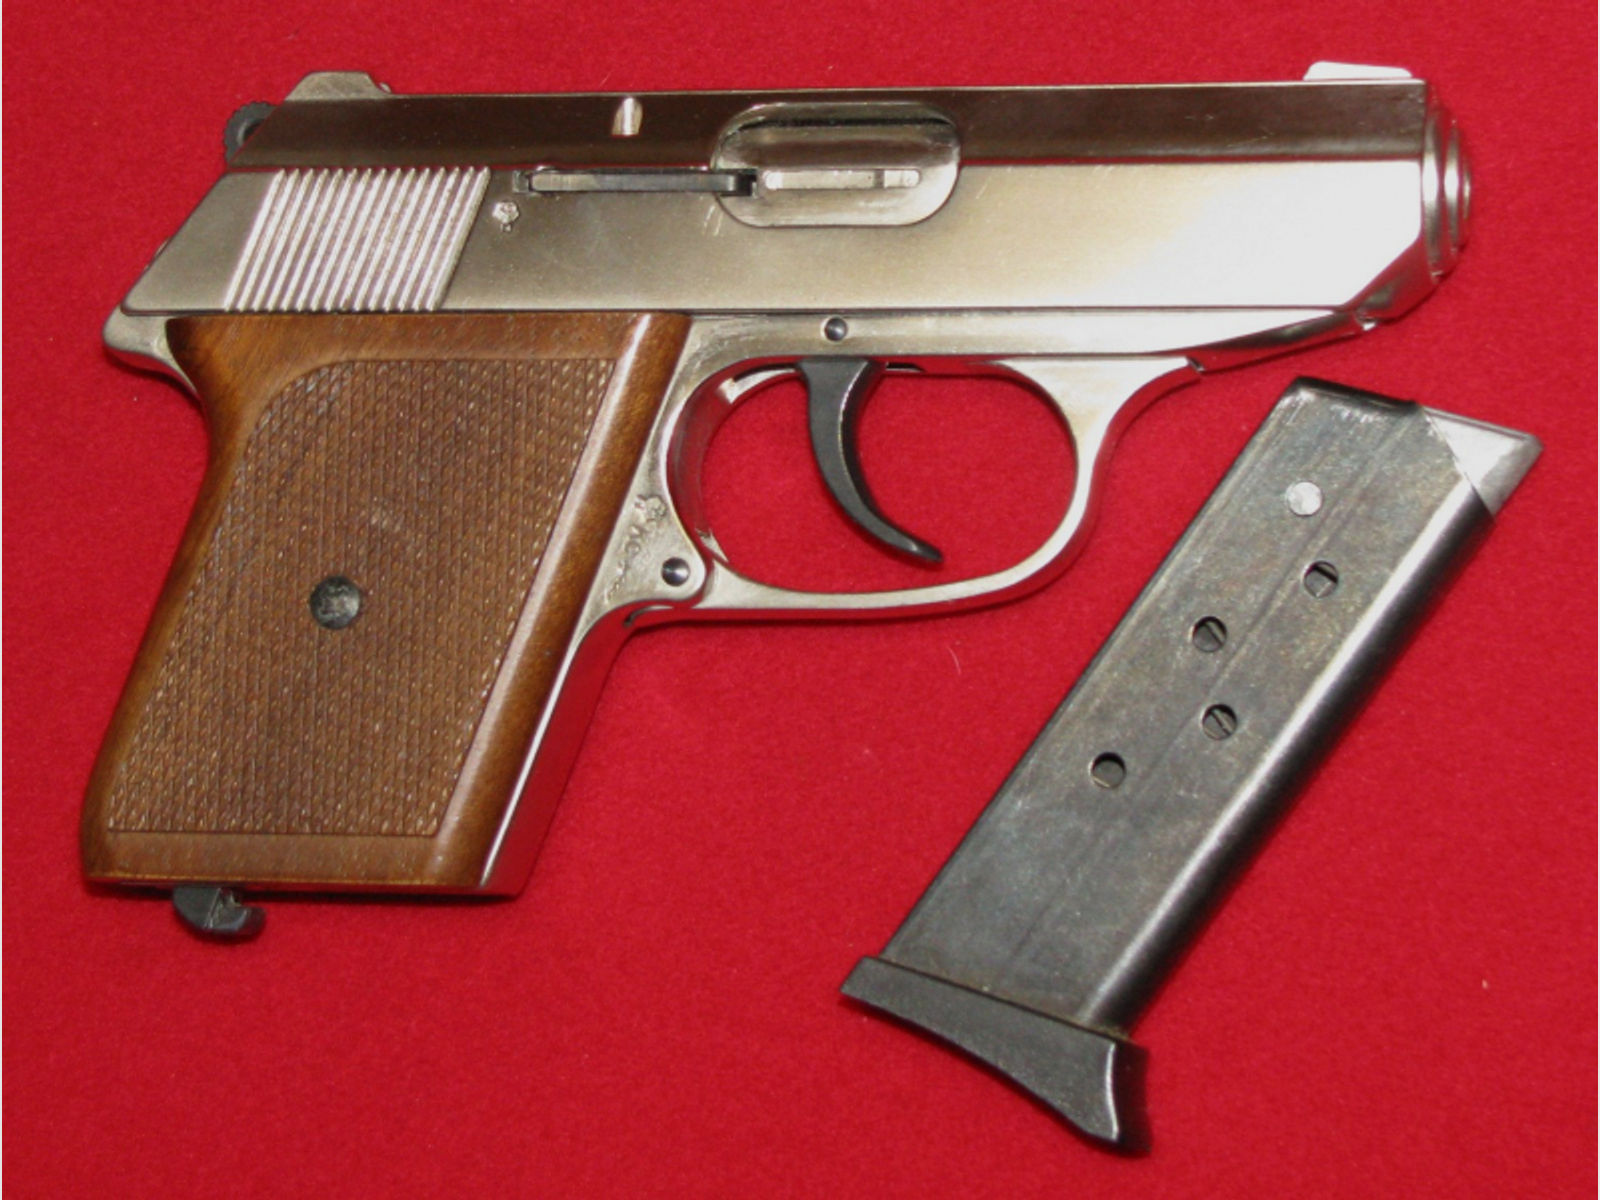 Röhm Schreckschuss - Pistole, eine Röhm RG 9 (Vernickelt-Holz) mit PTB 413, Bitte ansehen